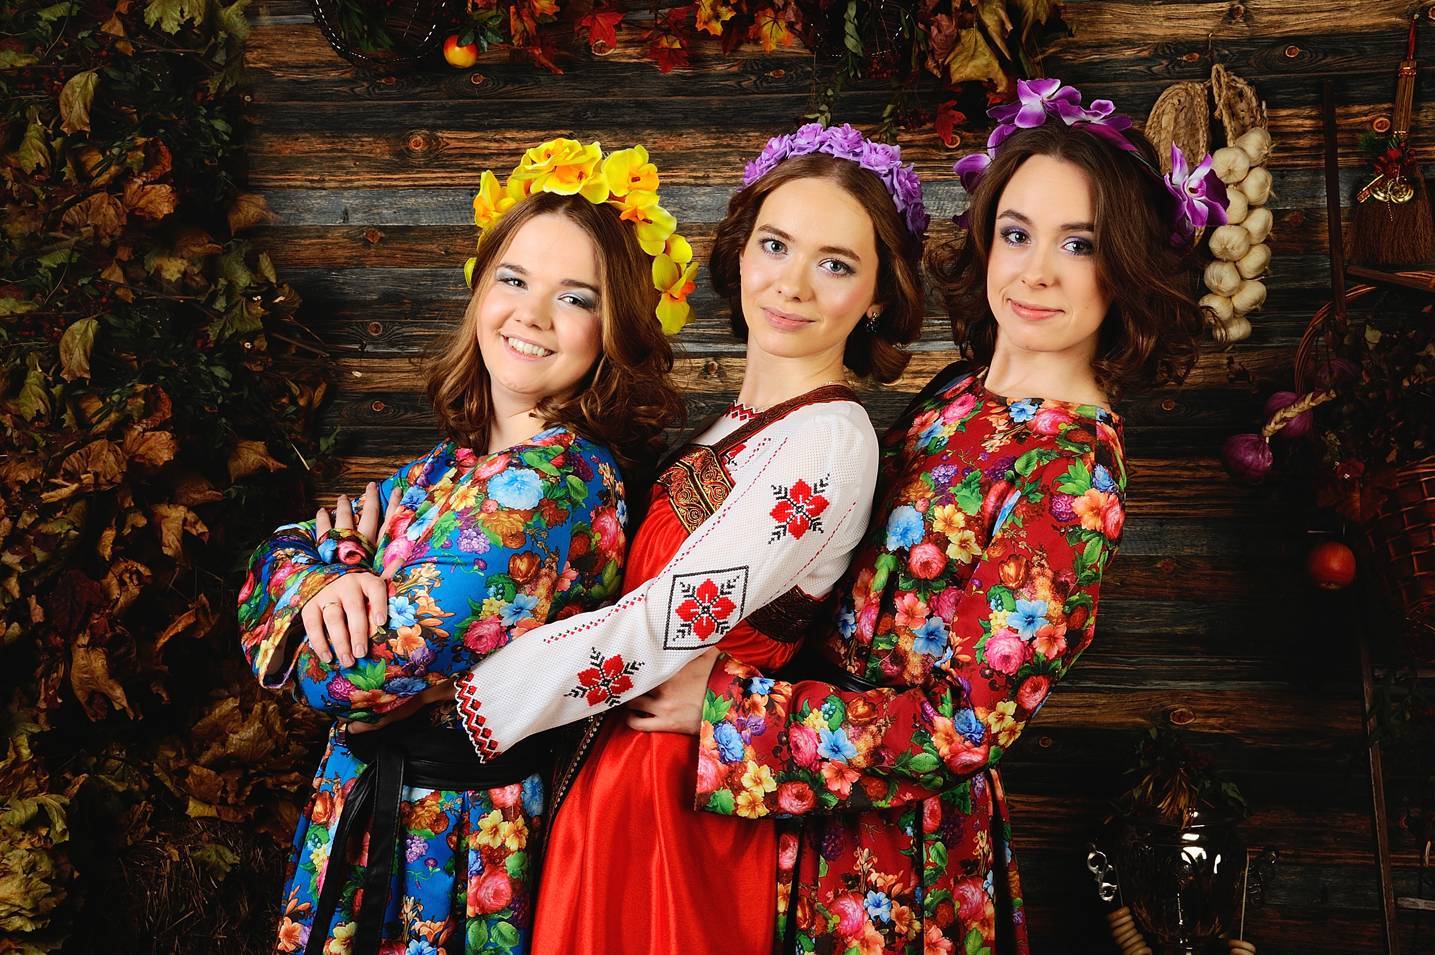 наряд для девушки на корпоратив в русском народном стиле фото 1